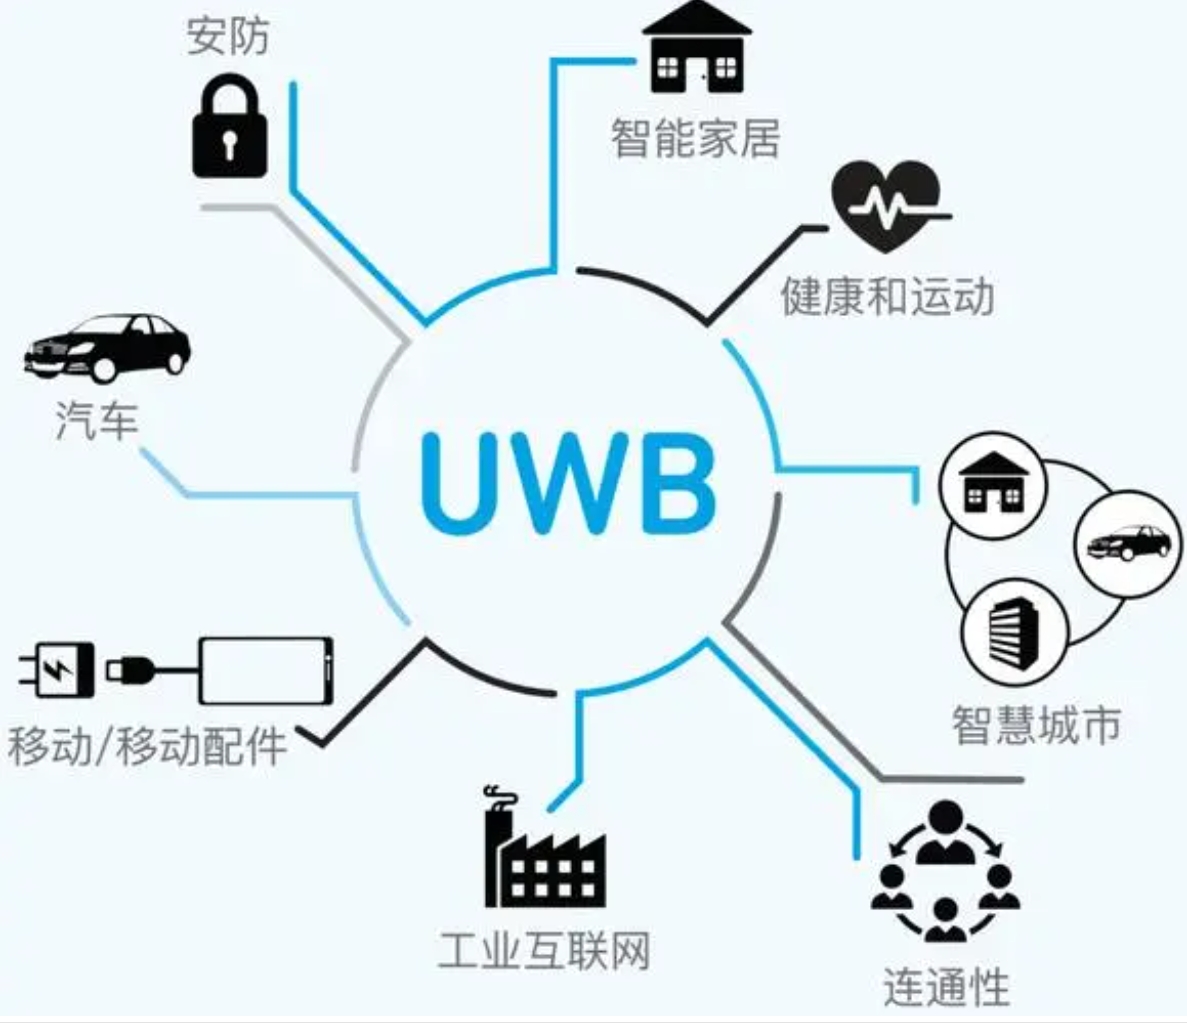 高頻次使用UWB這個技術的場景有哪些？怎么推廣UWB？